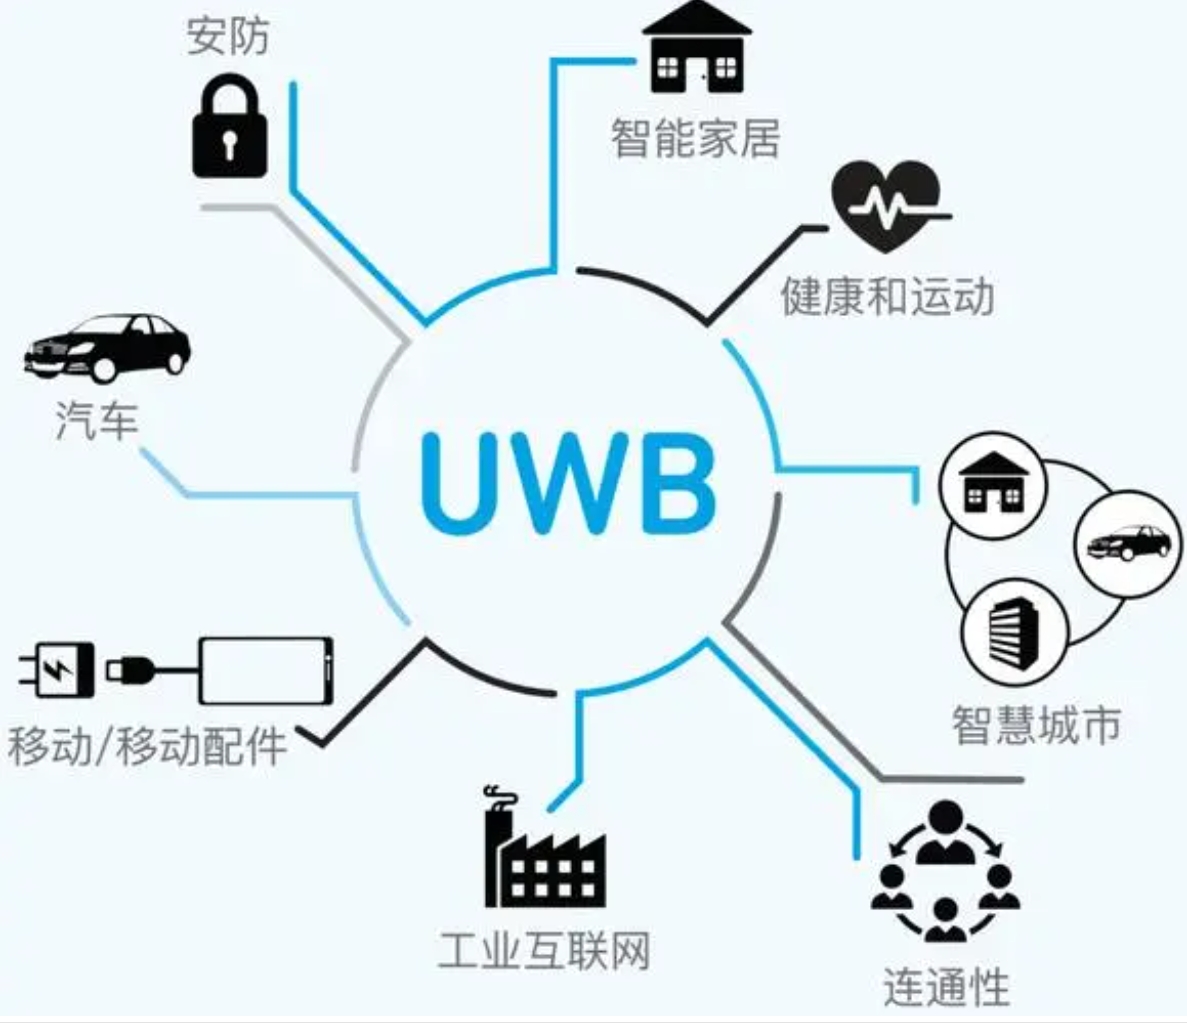 高頻次使用UWB這個技術的場景有哪些？怎么推廣UWB？